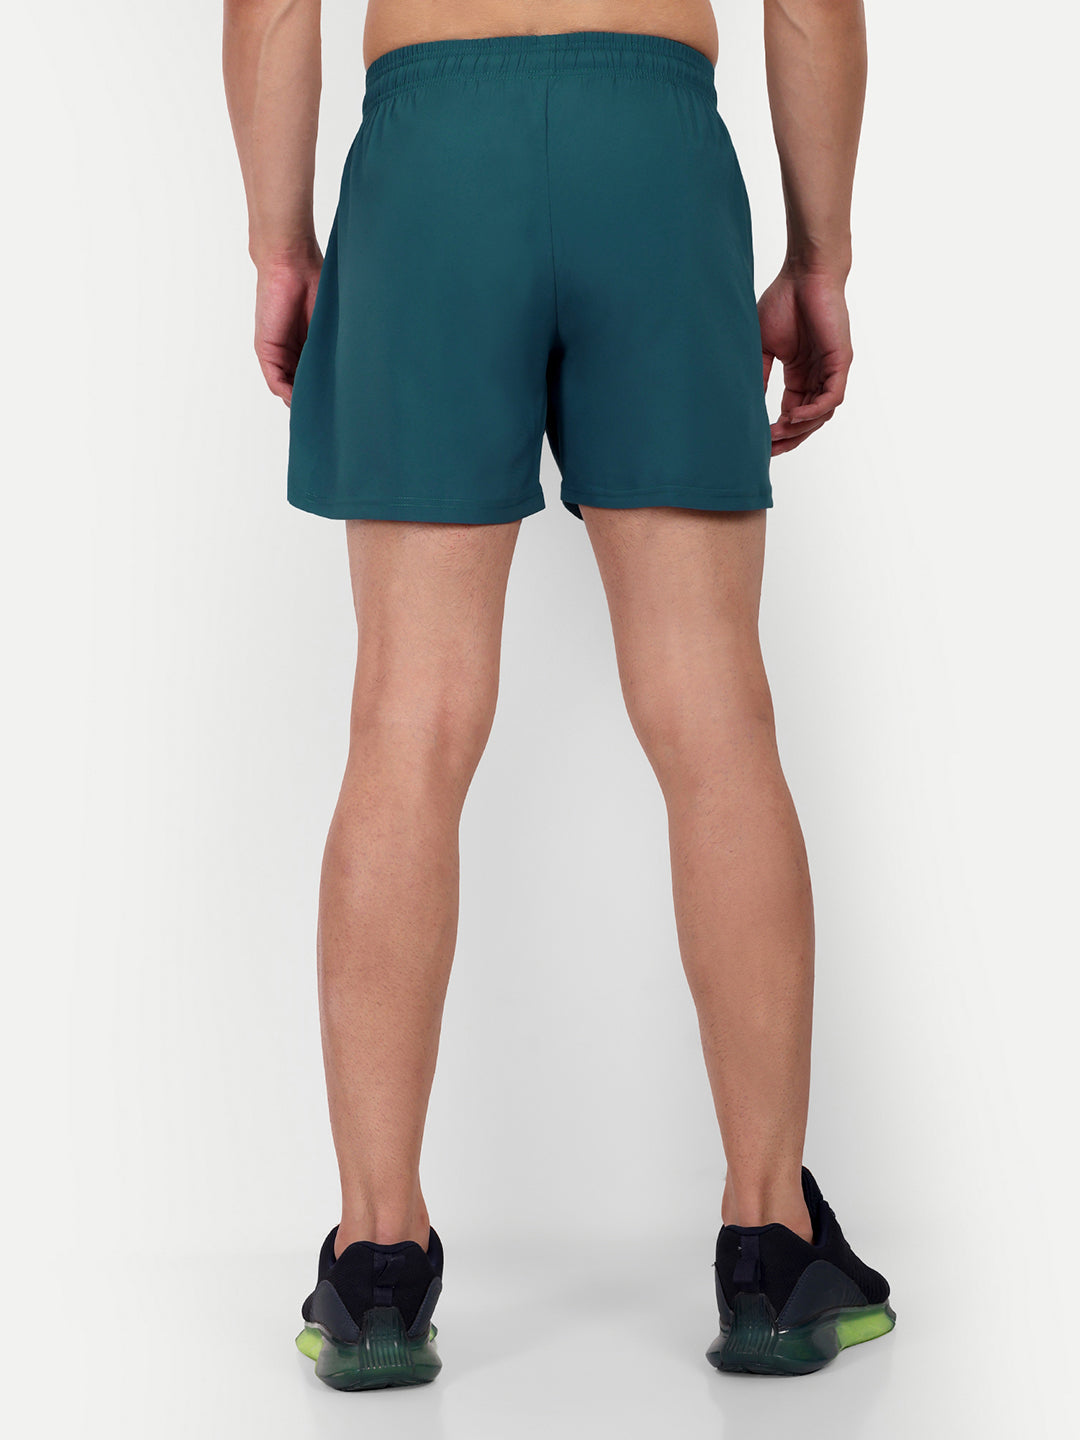 Power 5" Shorts - Aqua Green